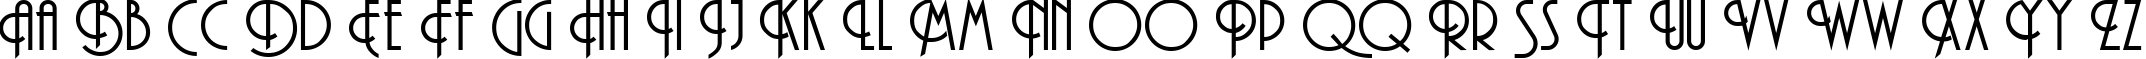 Пример написания английского алфавита шрифтом Andes